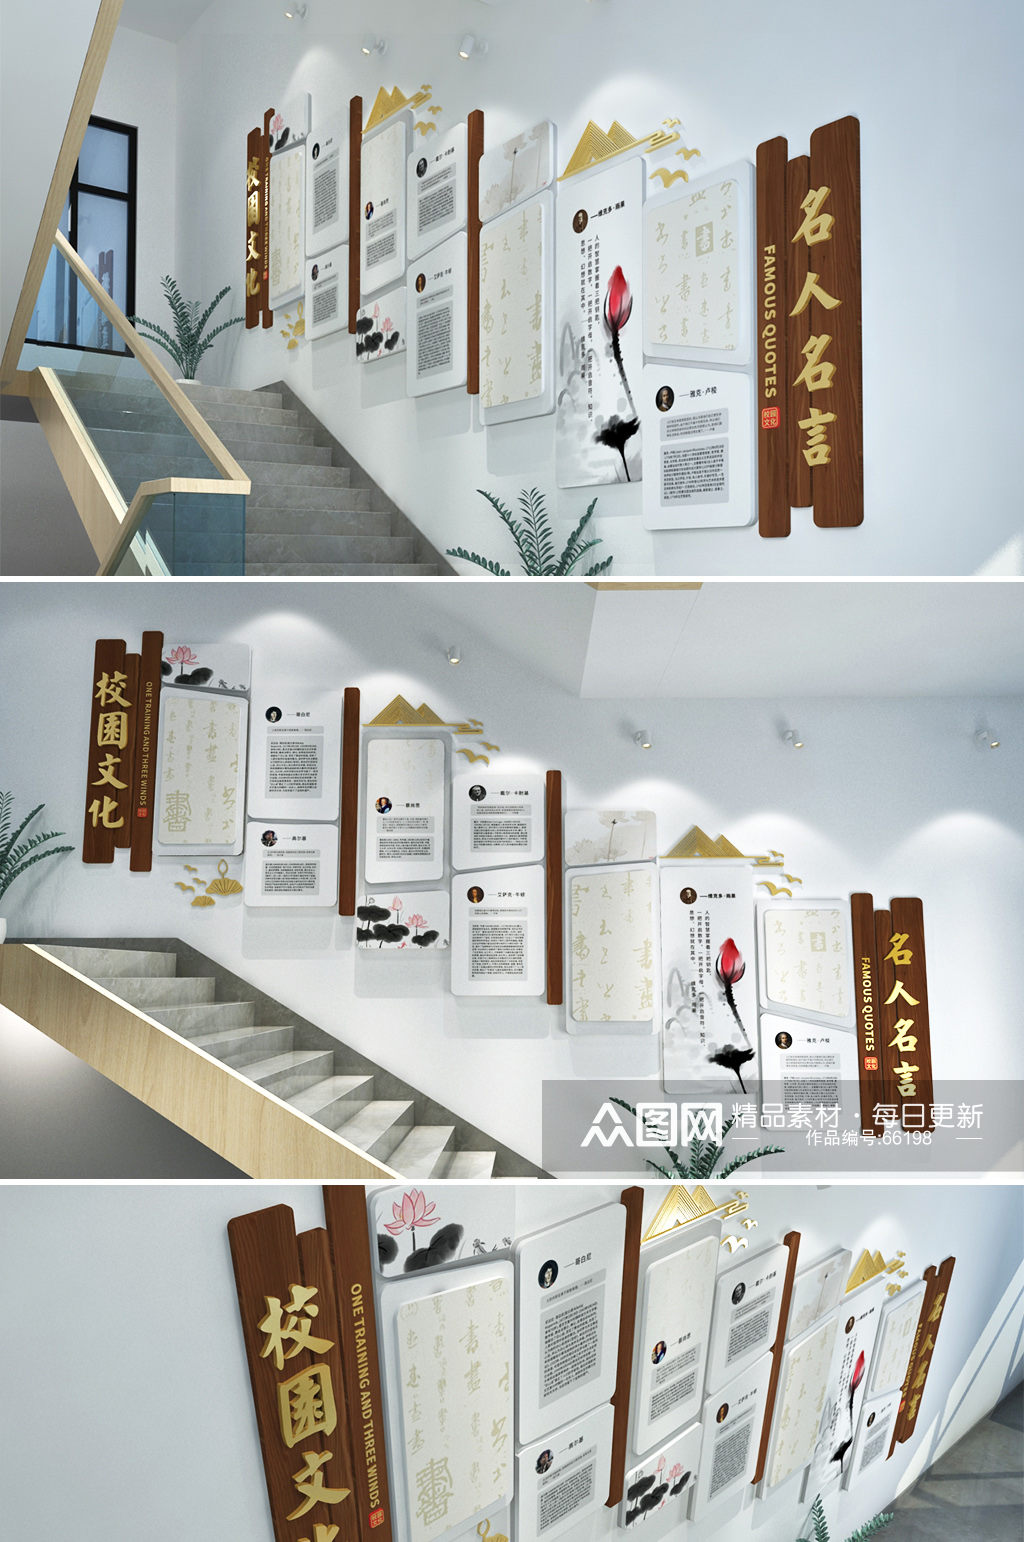 新中式校园图书室班级教室楼道楼梯文化墙名人墙素材